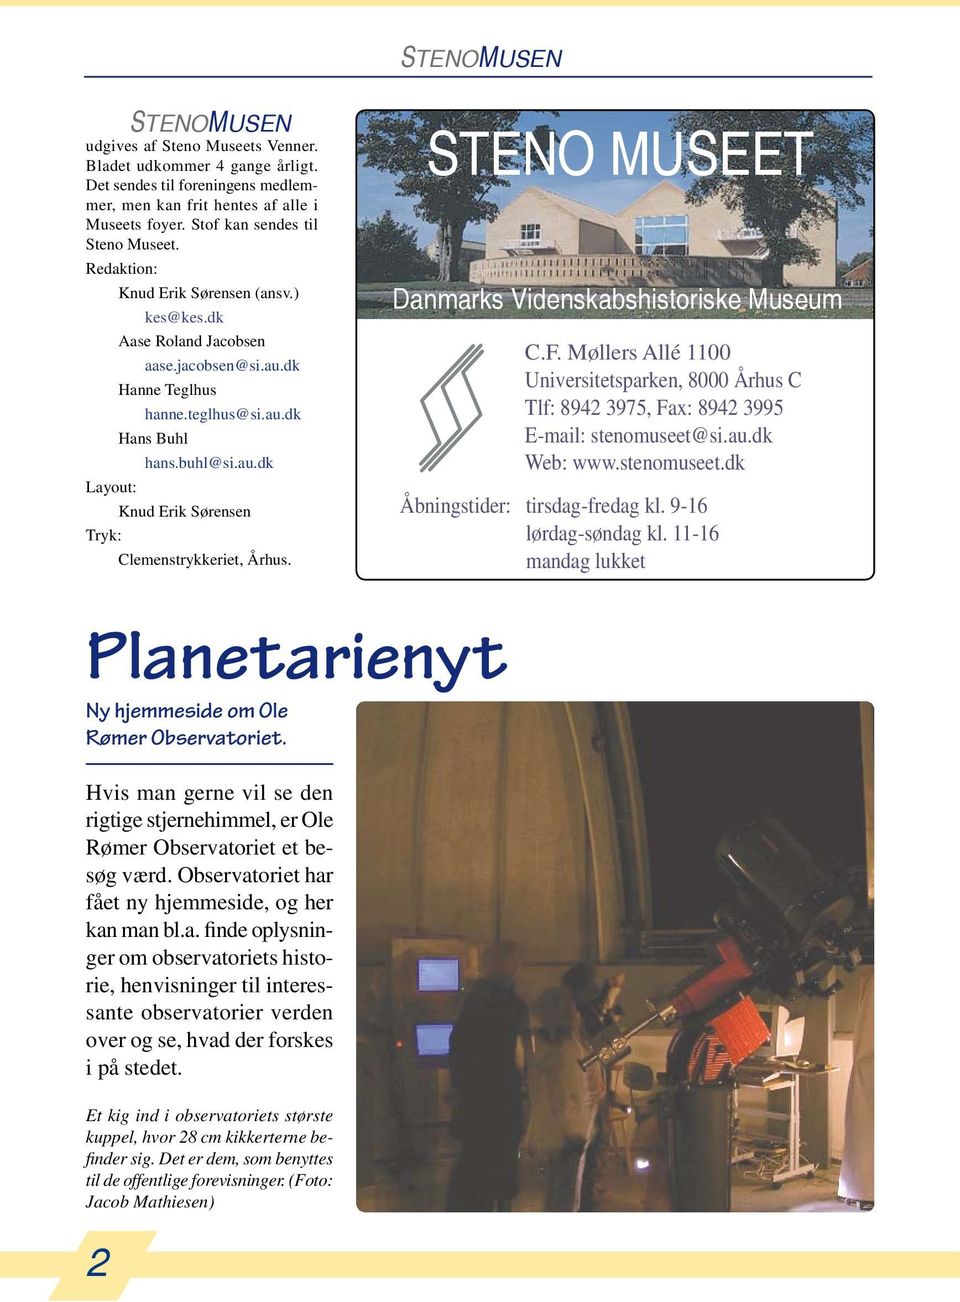 Planetarienyt Ny hjemmeside om Ole Rømer Observatoriet. Hvis man gerne vil se den rigtige stjernehimmel, er Ole Rømer Observatoriet et besøg værd.